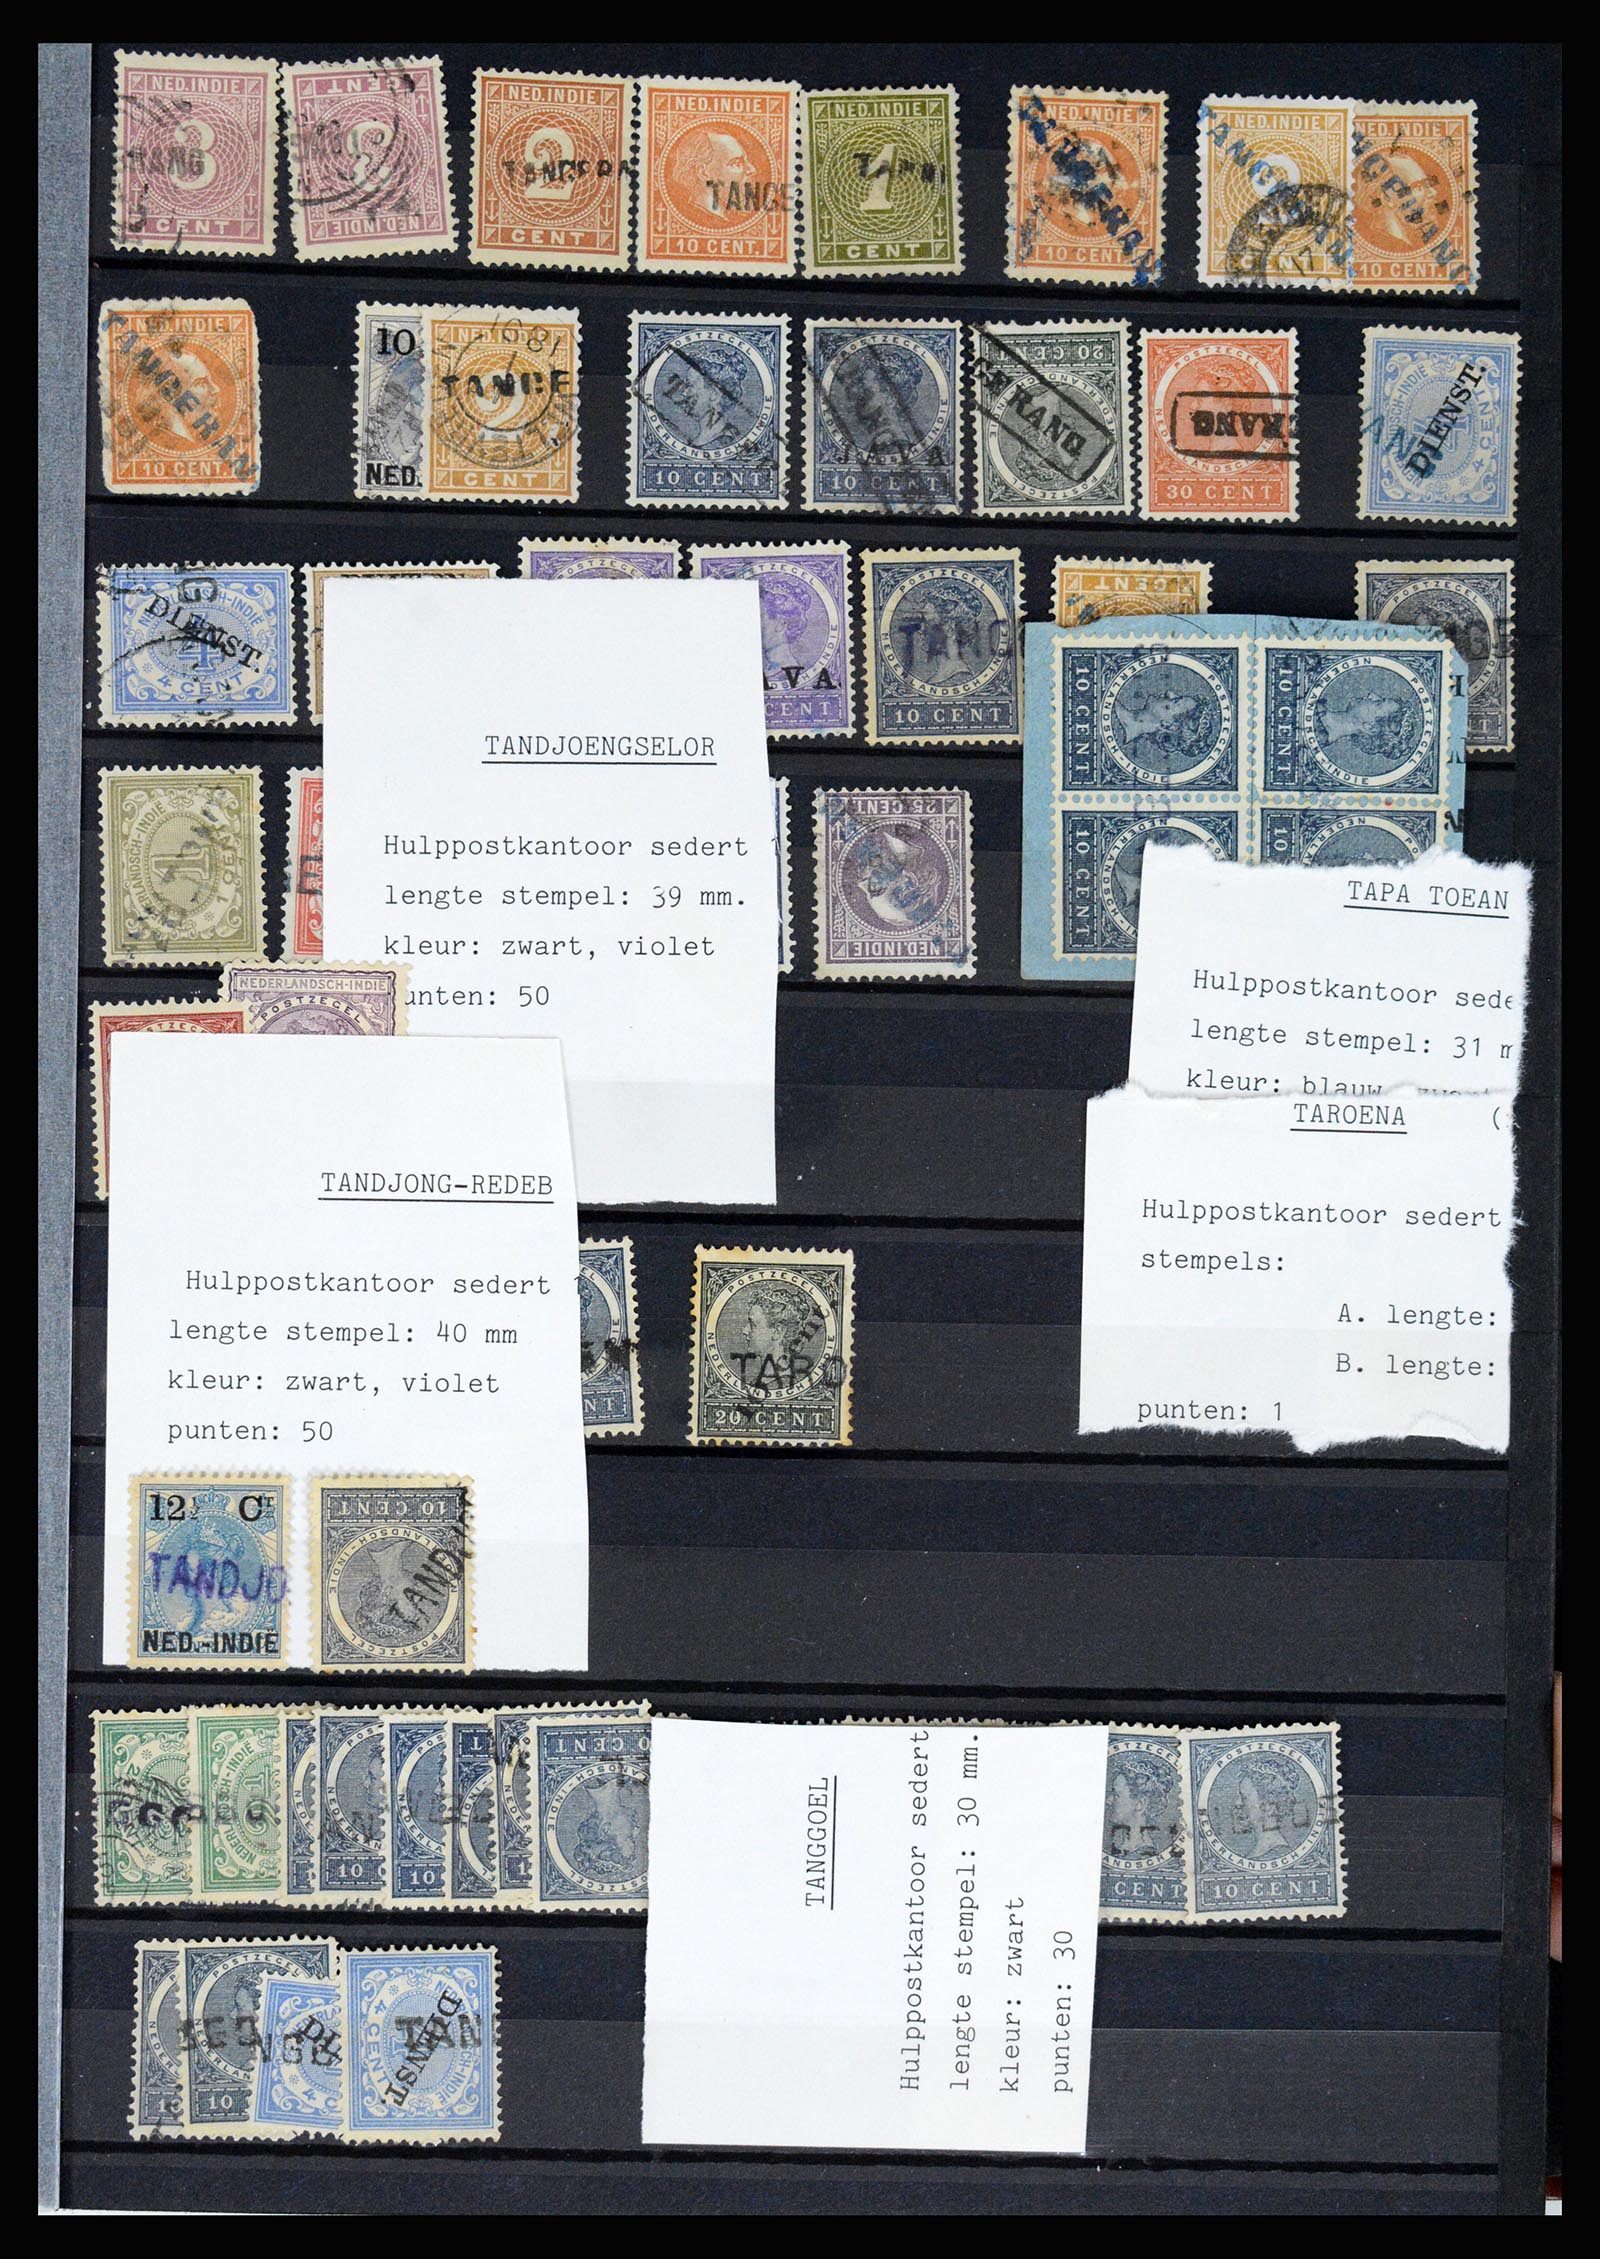 36512 069 - Stamp collection 36512 Nederlands Indië stempels 1872-1930.